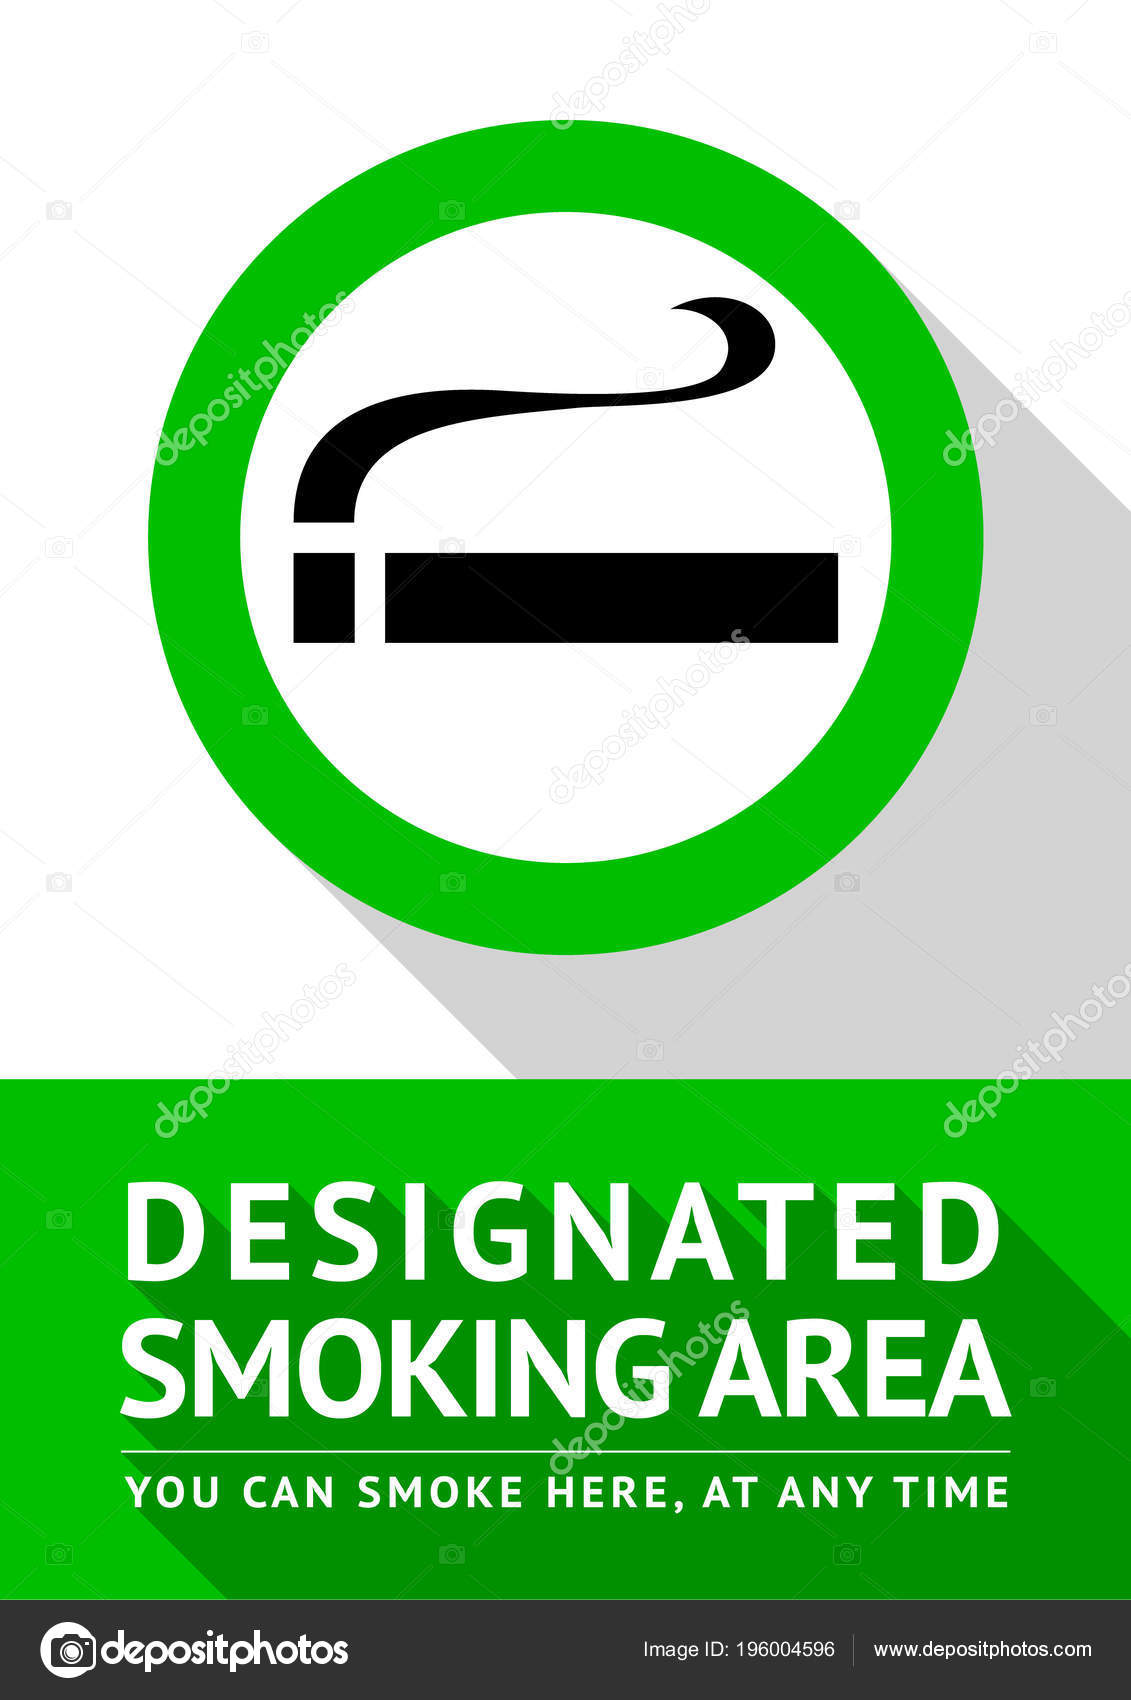 Letrero cartel prohibido fumar para imprimir gratis – Bazar Gráfico